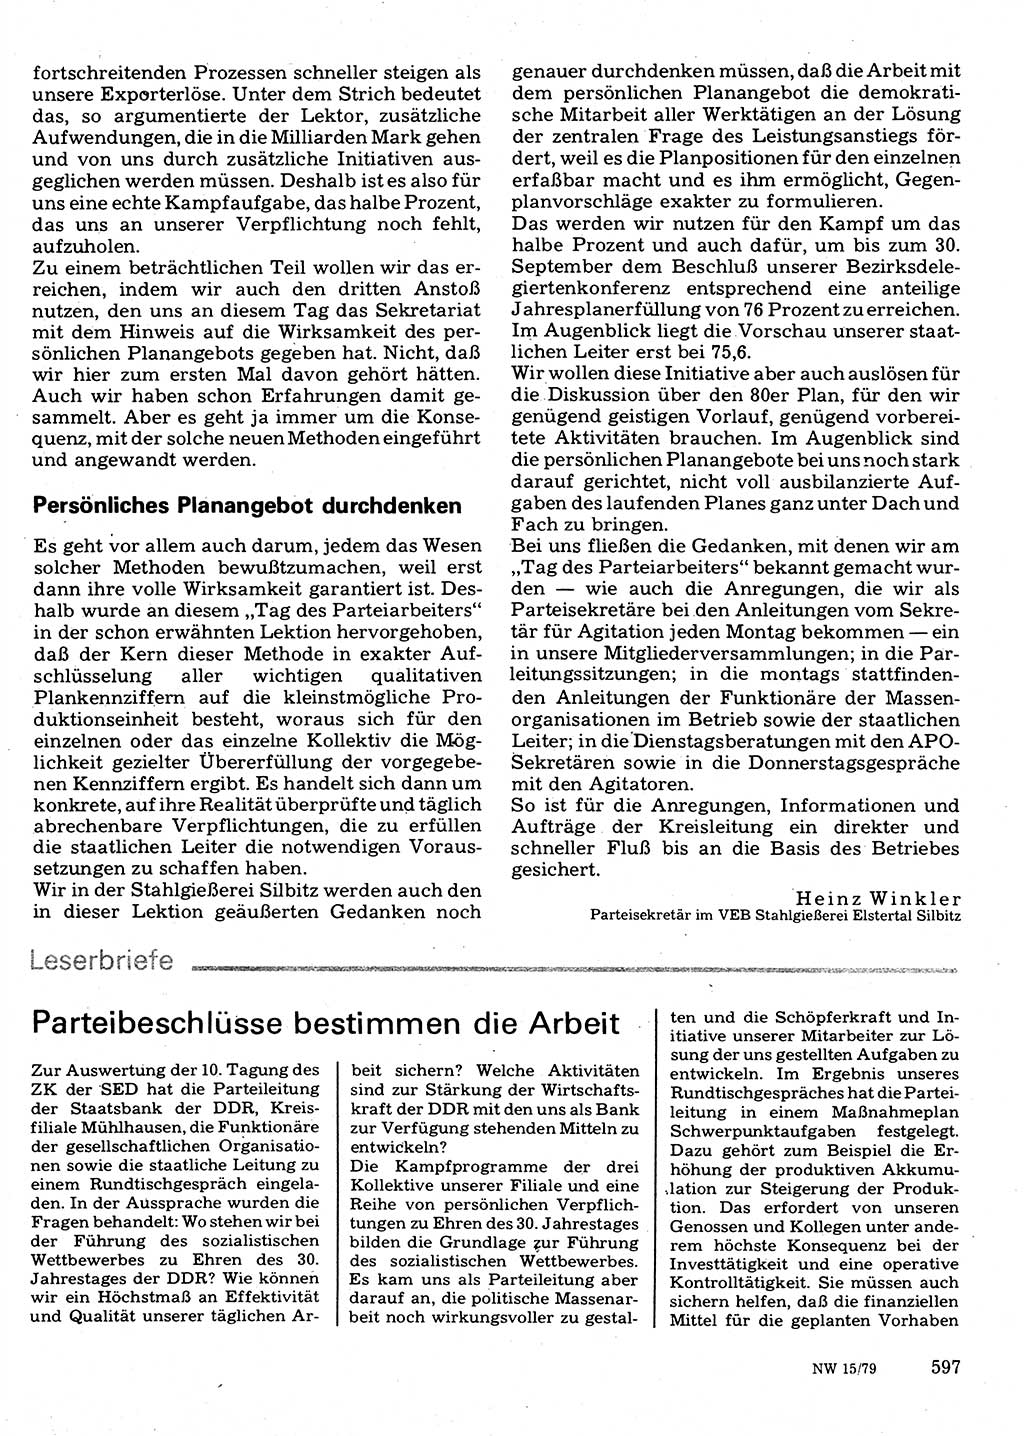 Neuer Weg (NW), Organ des Zentralkomitees (ZK) der SED (Sozialistische Einheitspartei Deutschlands) für Fragen des Parteilebens, 34. Jahrgang [Deutsche Demokratische Republik (DDR)] 1979, Seite 597 (NW ZK SED DDR 1979, S. 597)